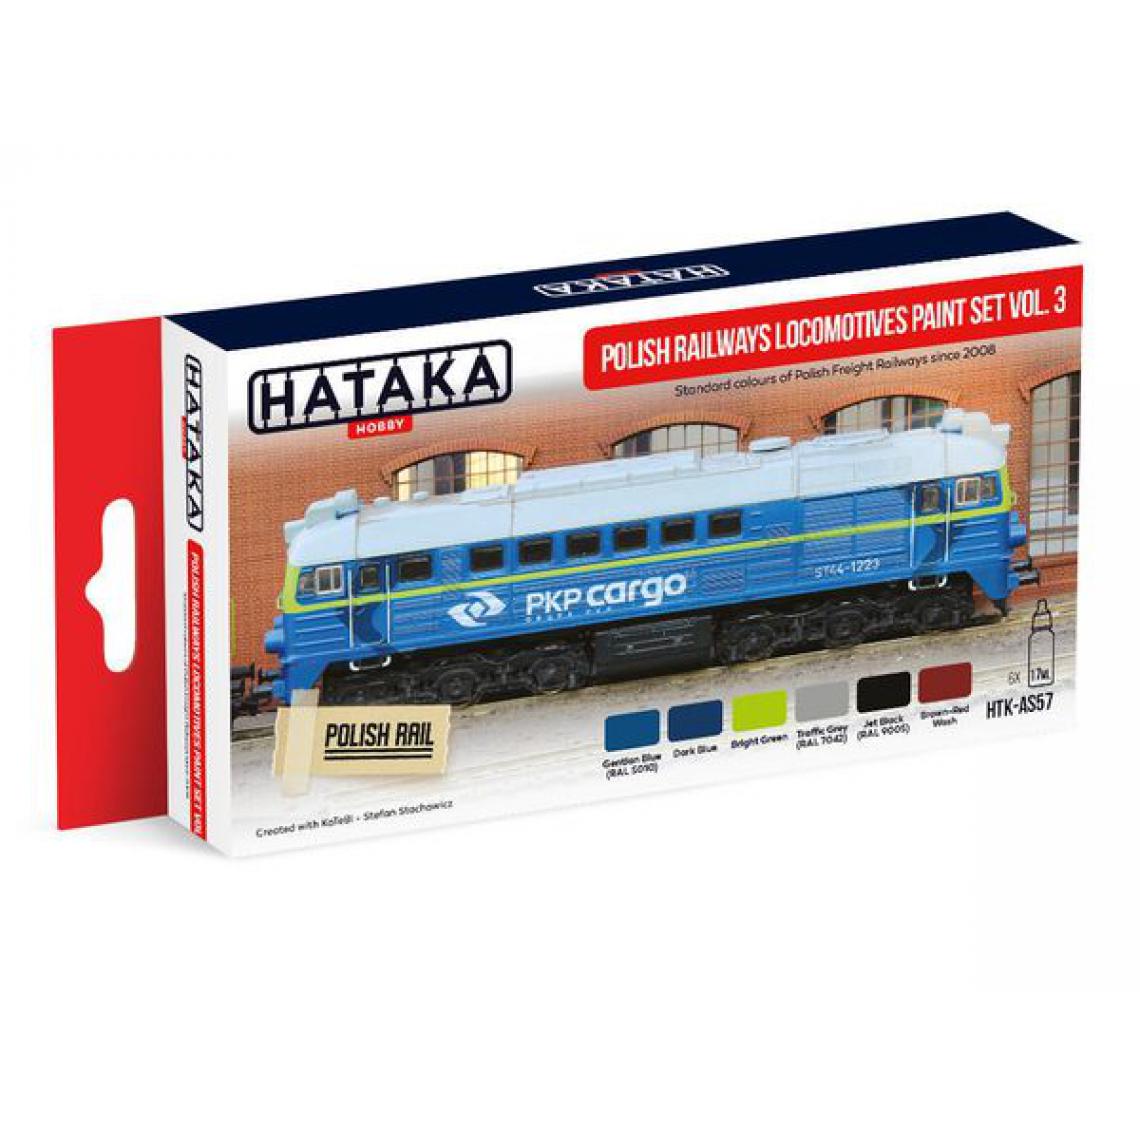 Hataka - Red Line Set (6 pcs) Polish Railways locomotives paint set vol. 3 - HATAKA - Accessoires et pièces